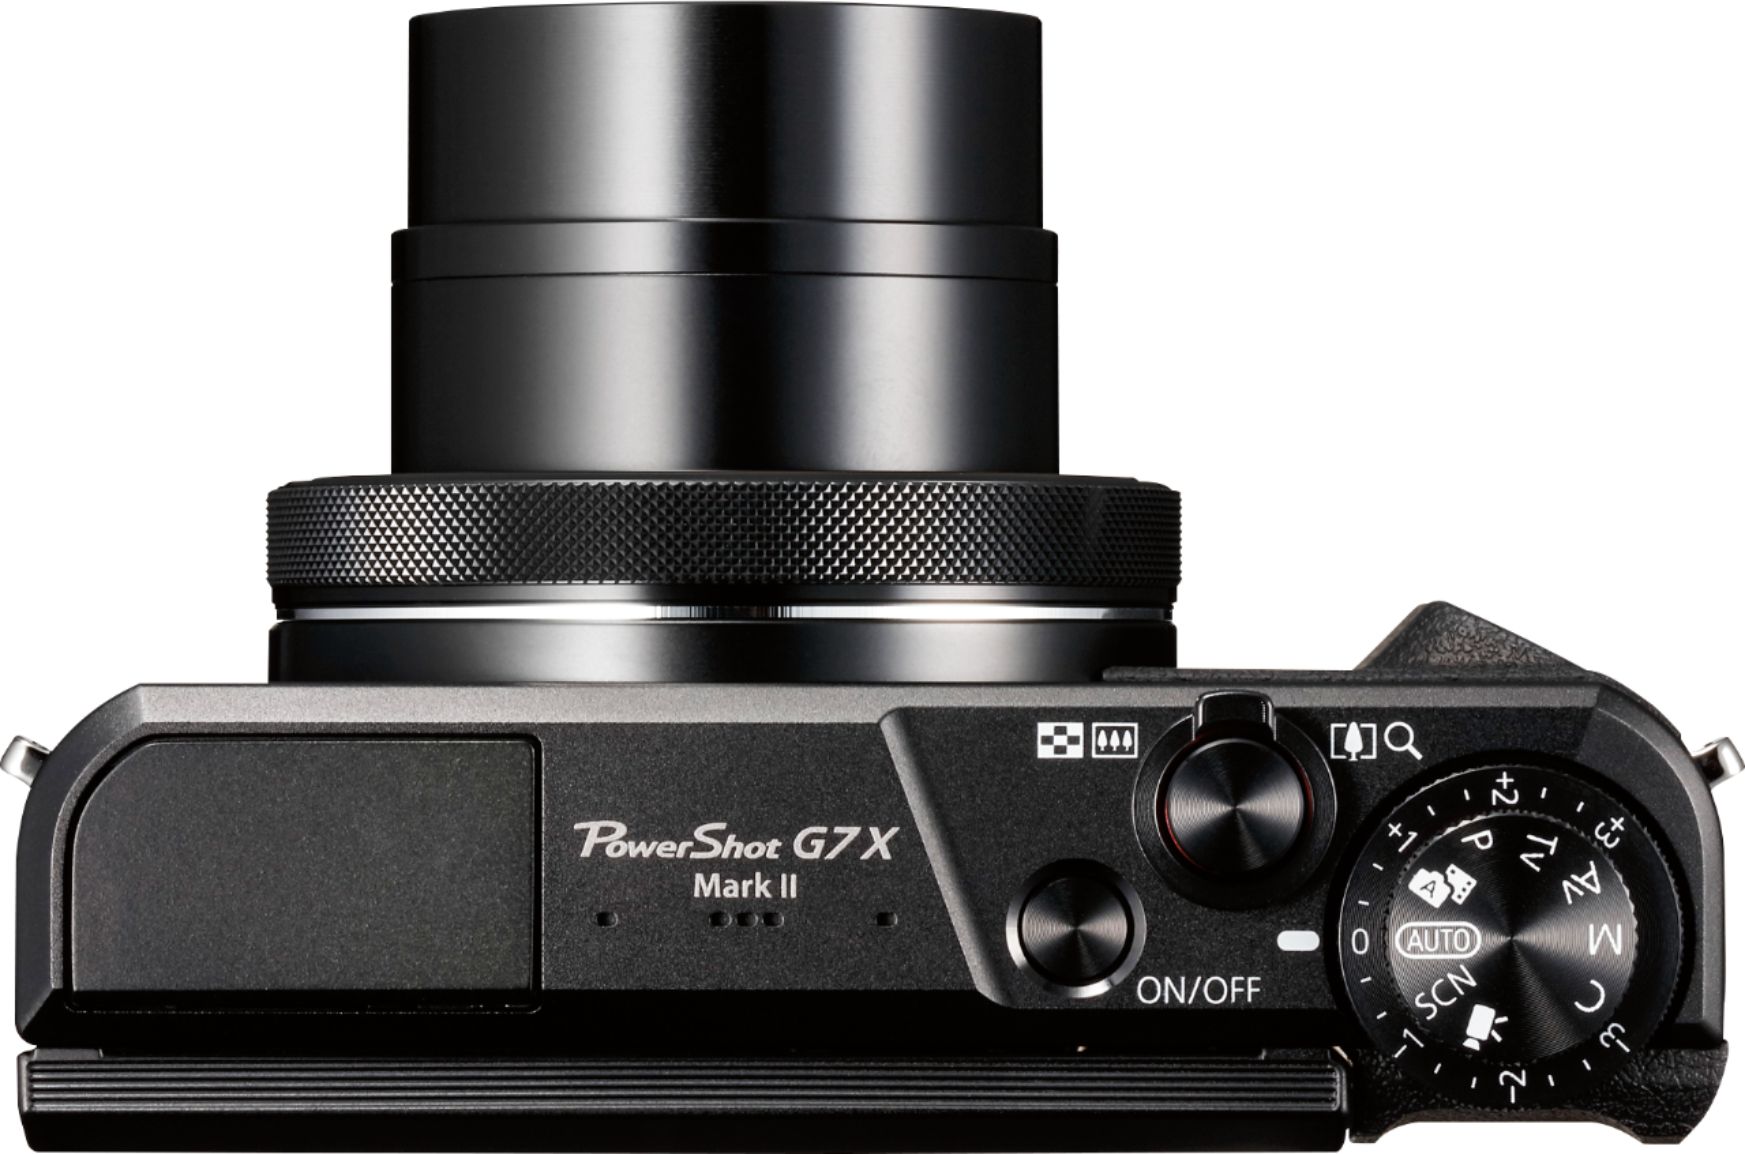 gas onszelf Kosmisch Canon PowerShot G7 X Mark II 20.1-Megapixel Digital Video Camera Black  1066C001 - Best Buy